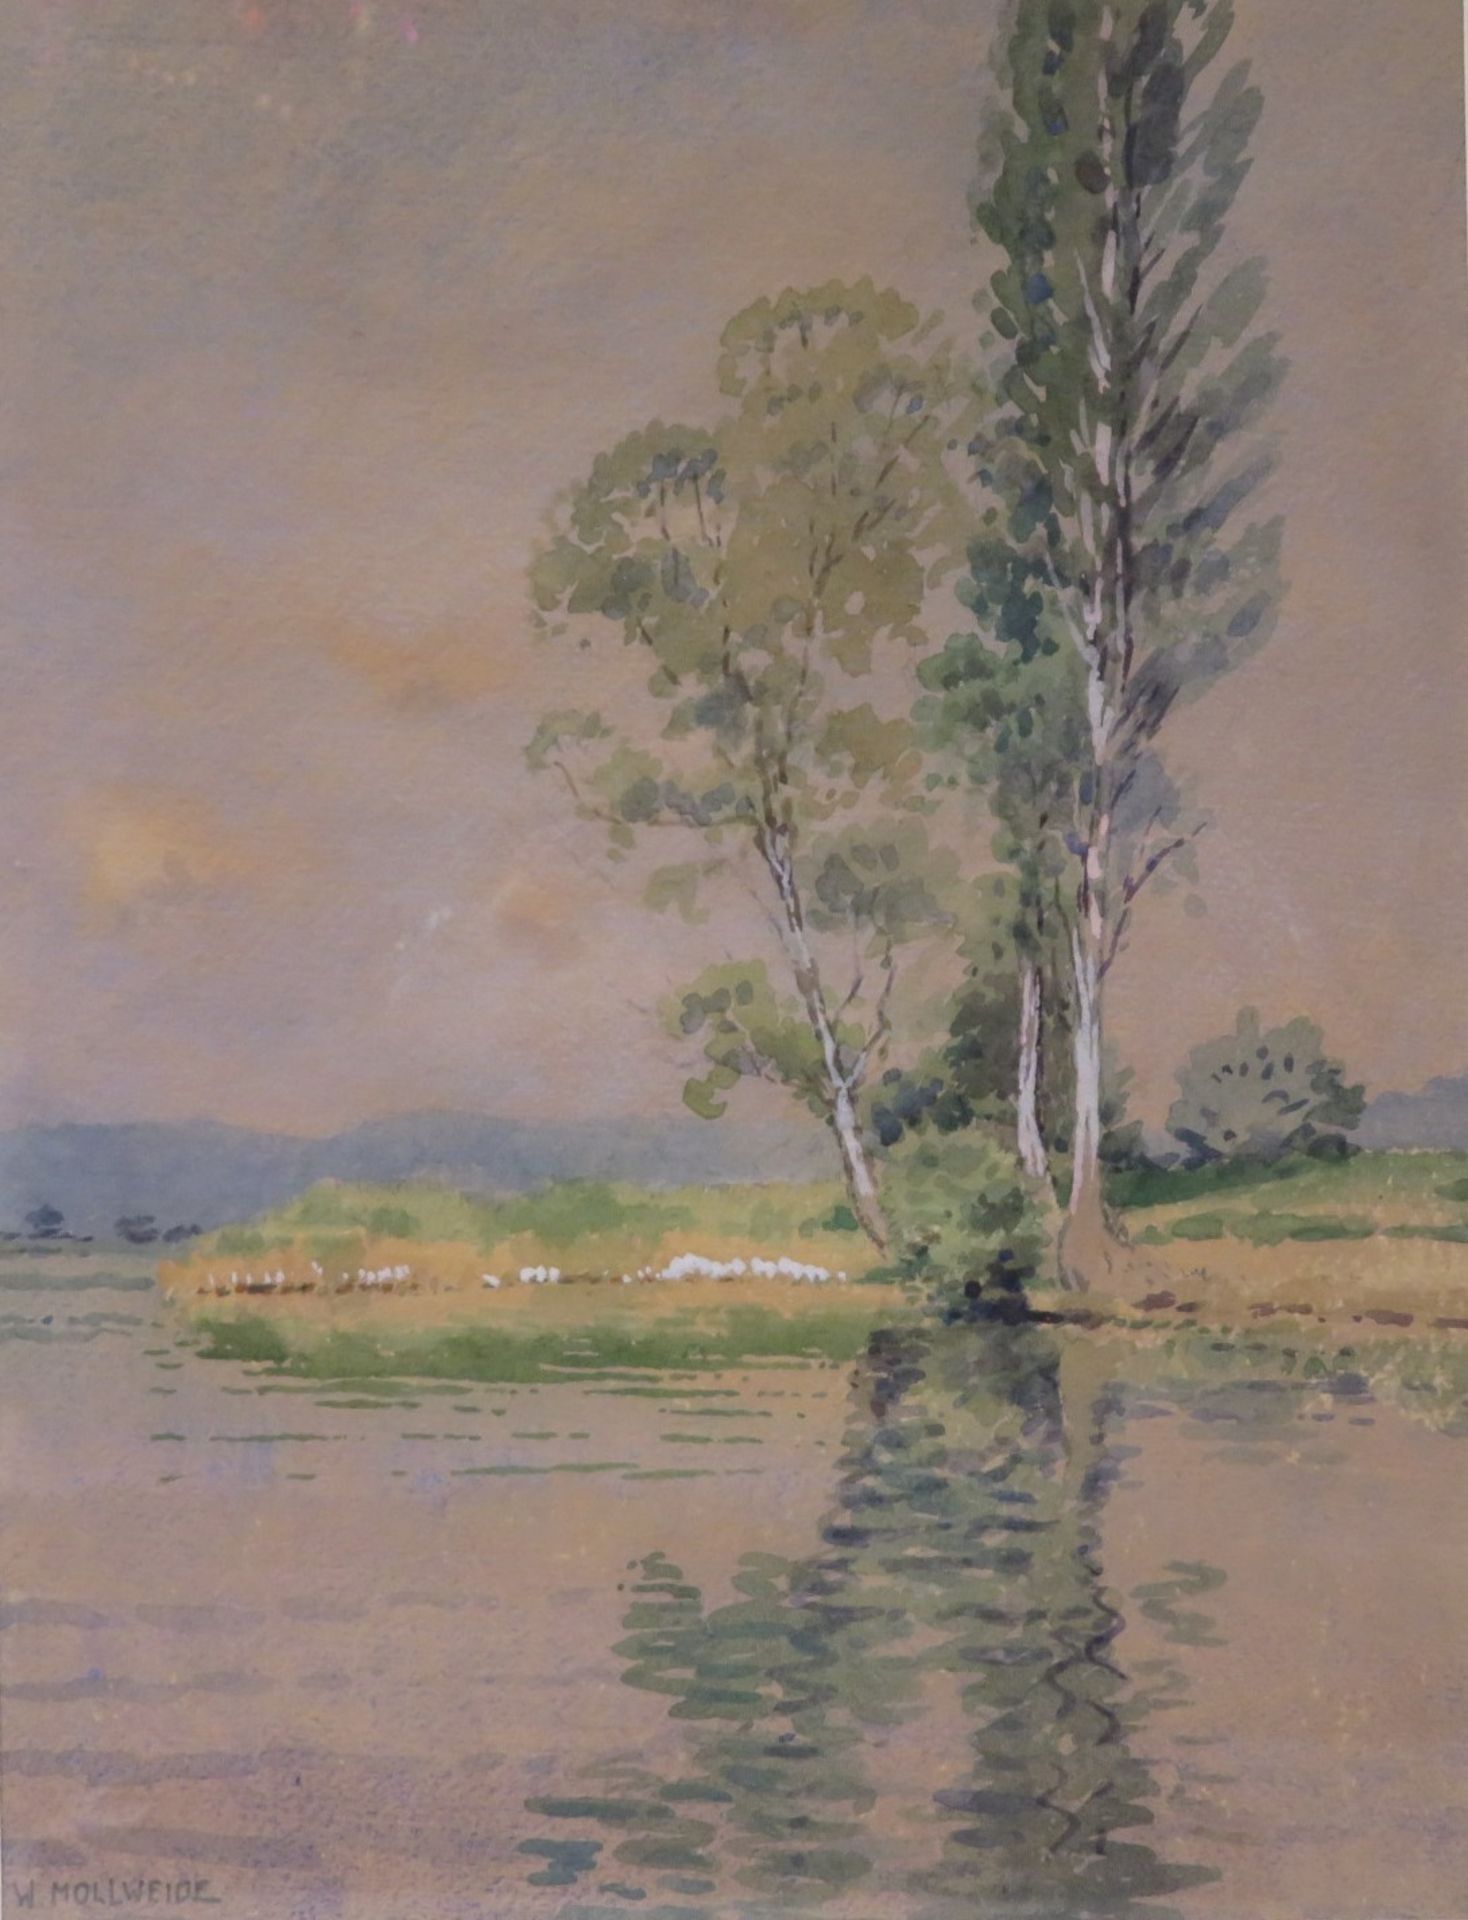 Mollweide, Werner, 1889 - 1978, Straßburg - Bodman-Ludwigshafen, deutscher Maler,